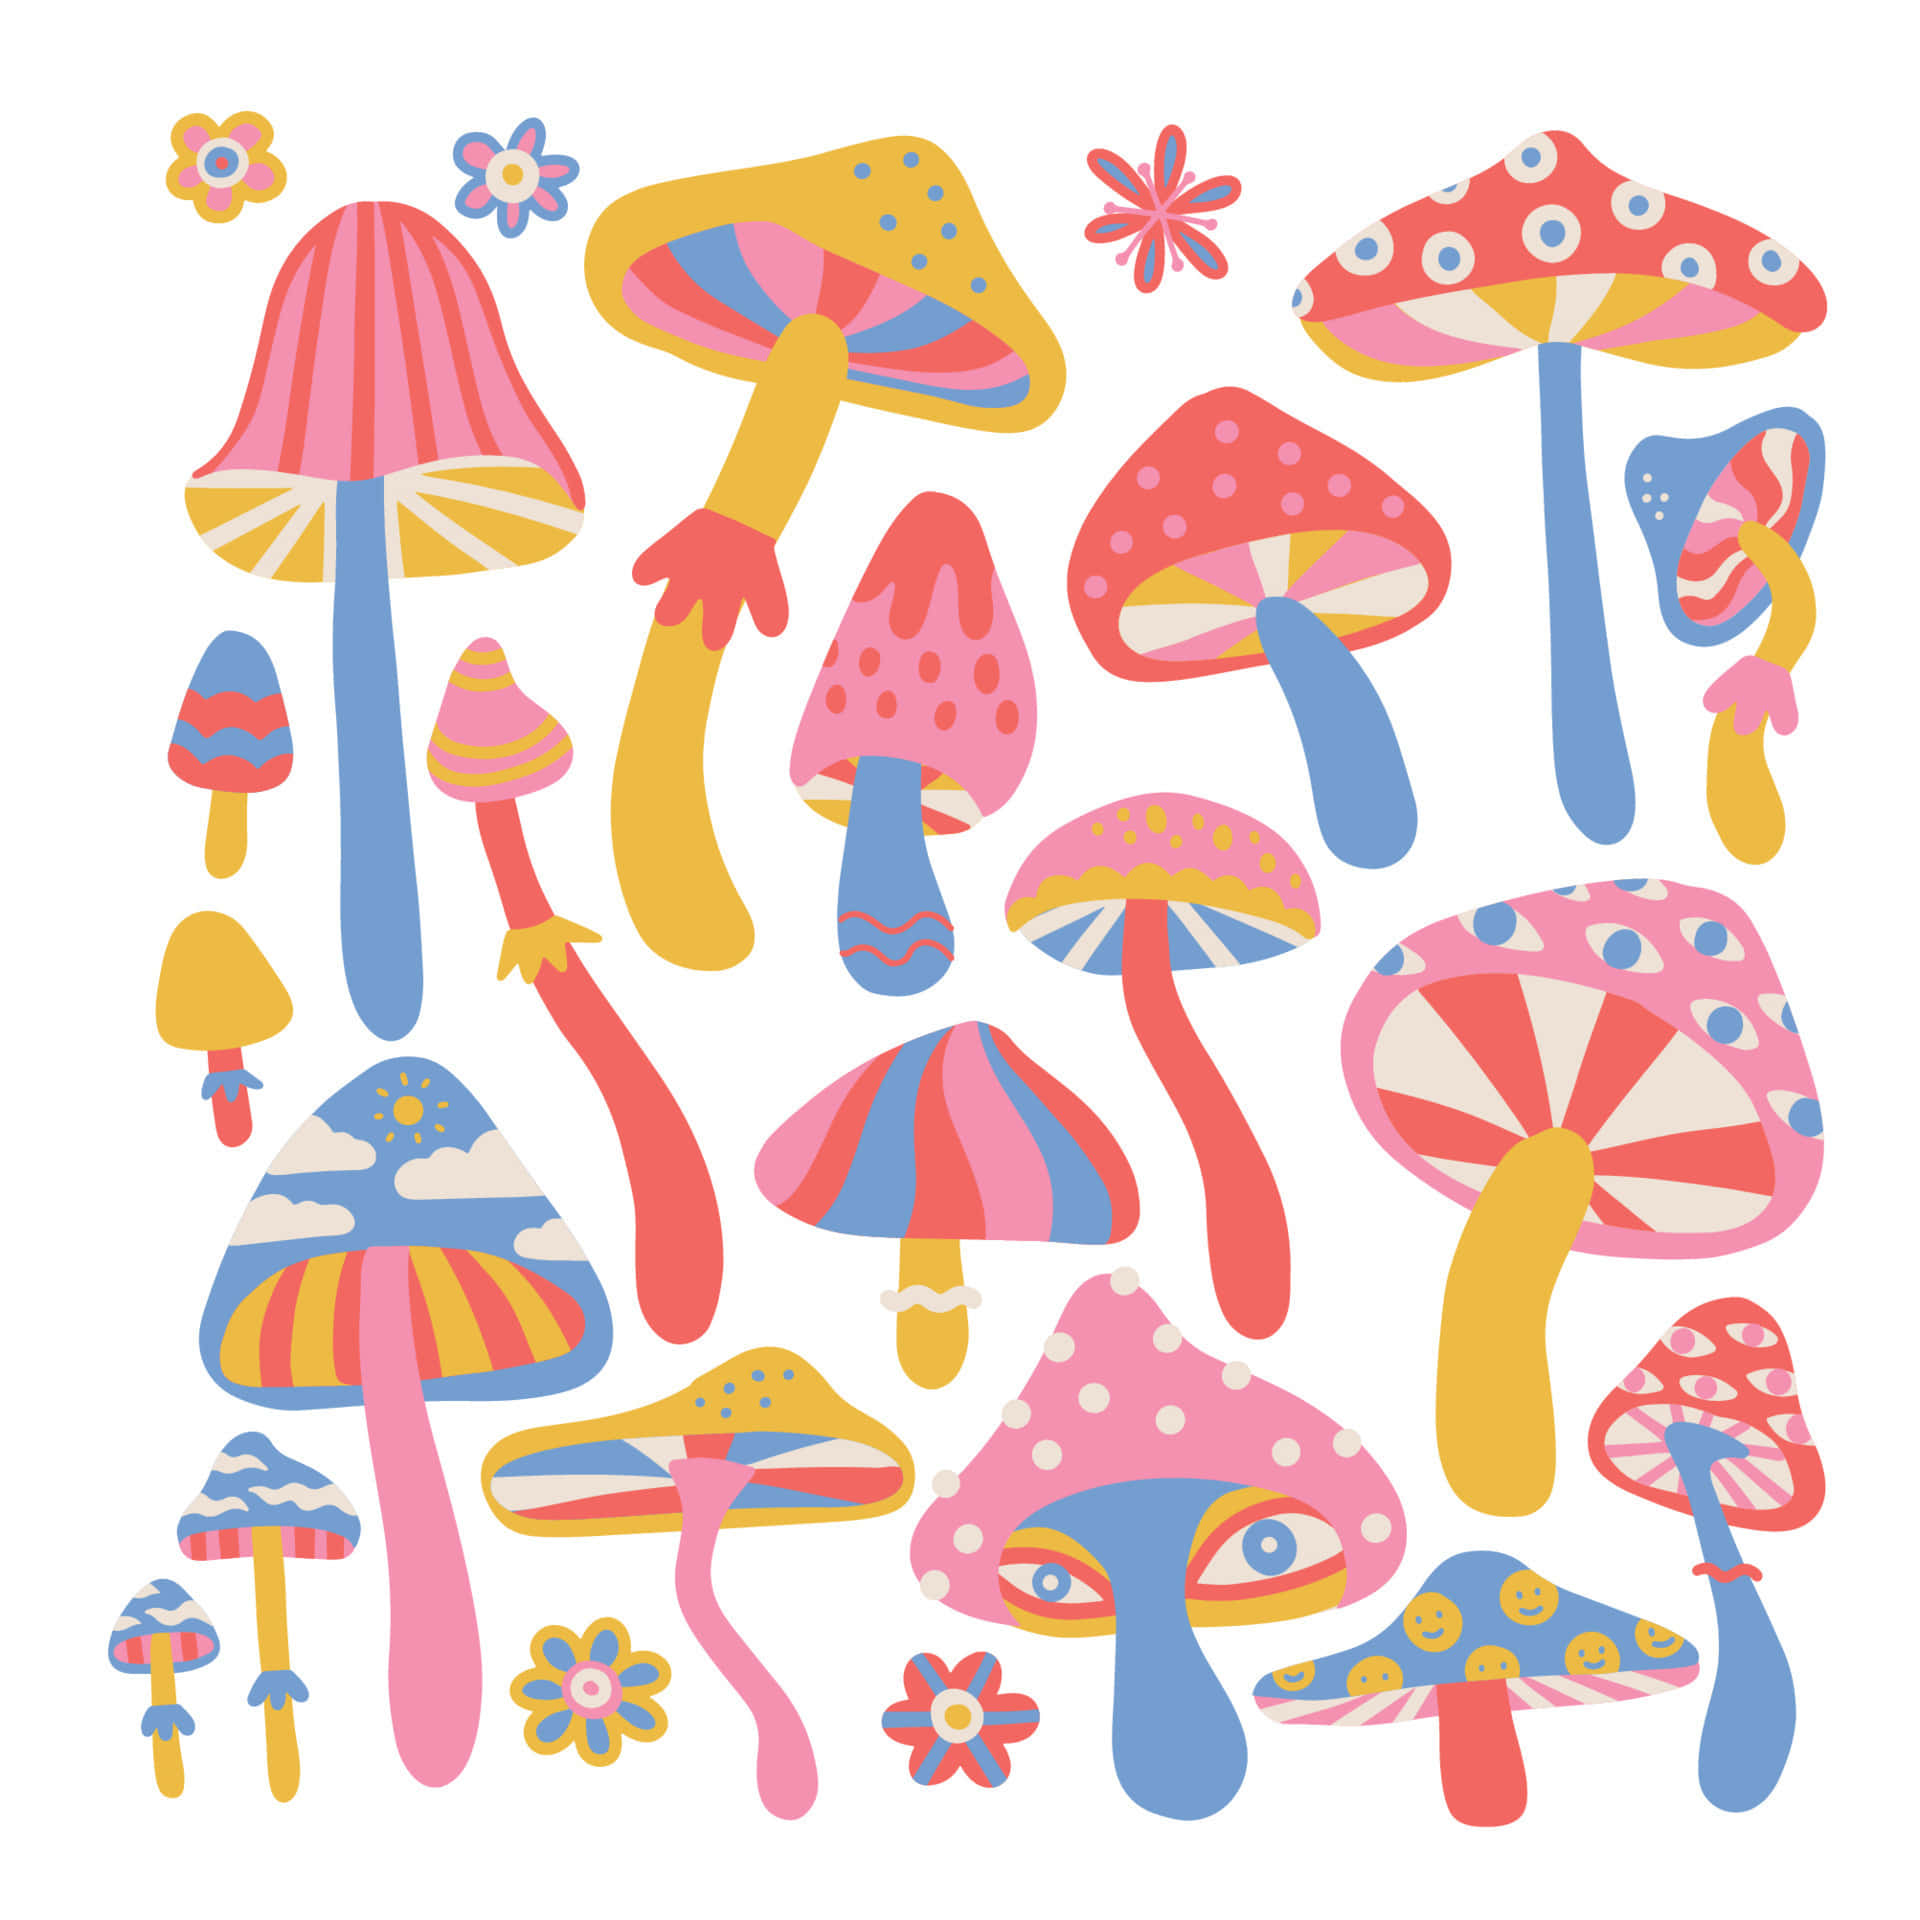 Enchanting mushroom amidst a magical landscape Wallpaper